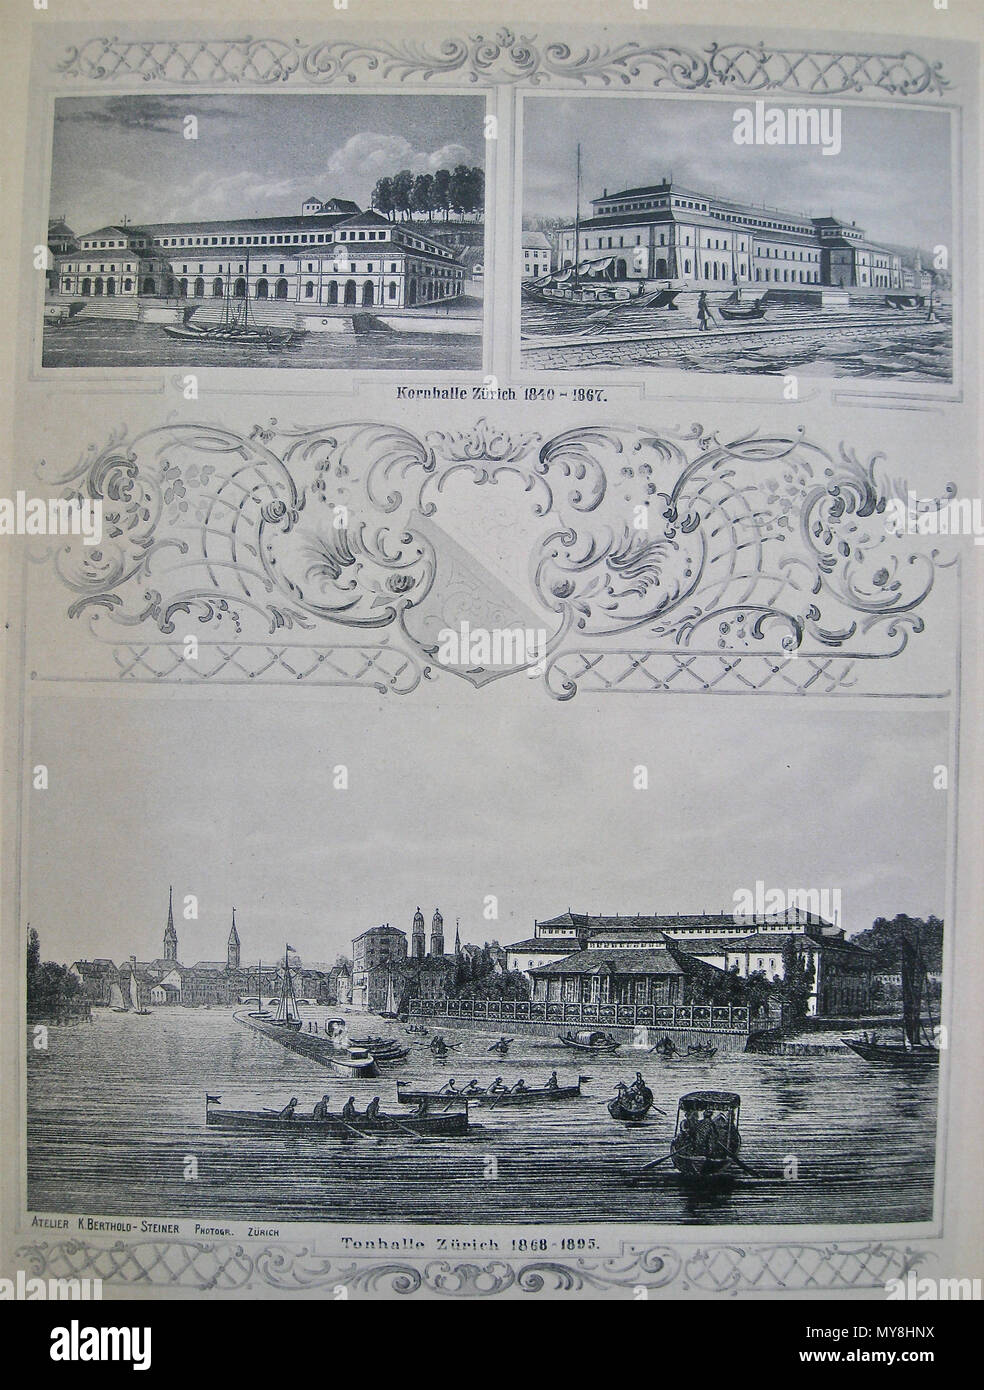 302 Kornhalle Zürich, 1840-1867 Konzertsaal auf dem heutigen Sechseläuten-Platz (oben); die dortige "Alte Tonhalle", 1868-1895 (unten) Foto Stock